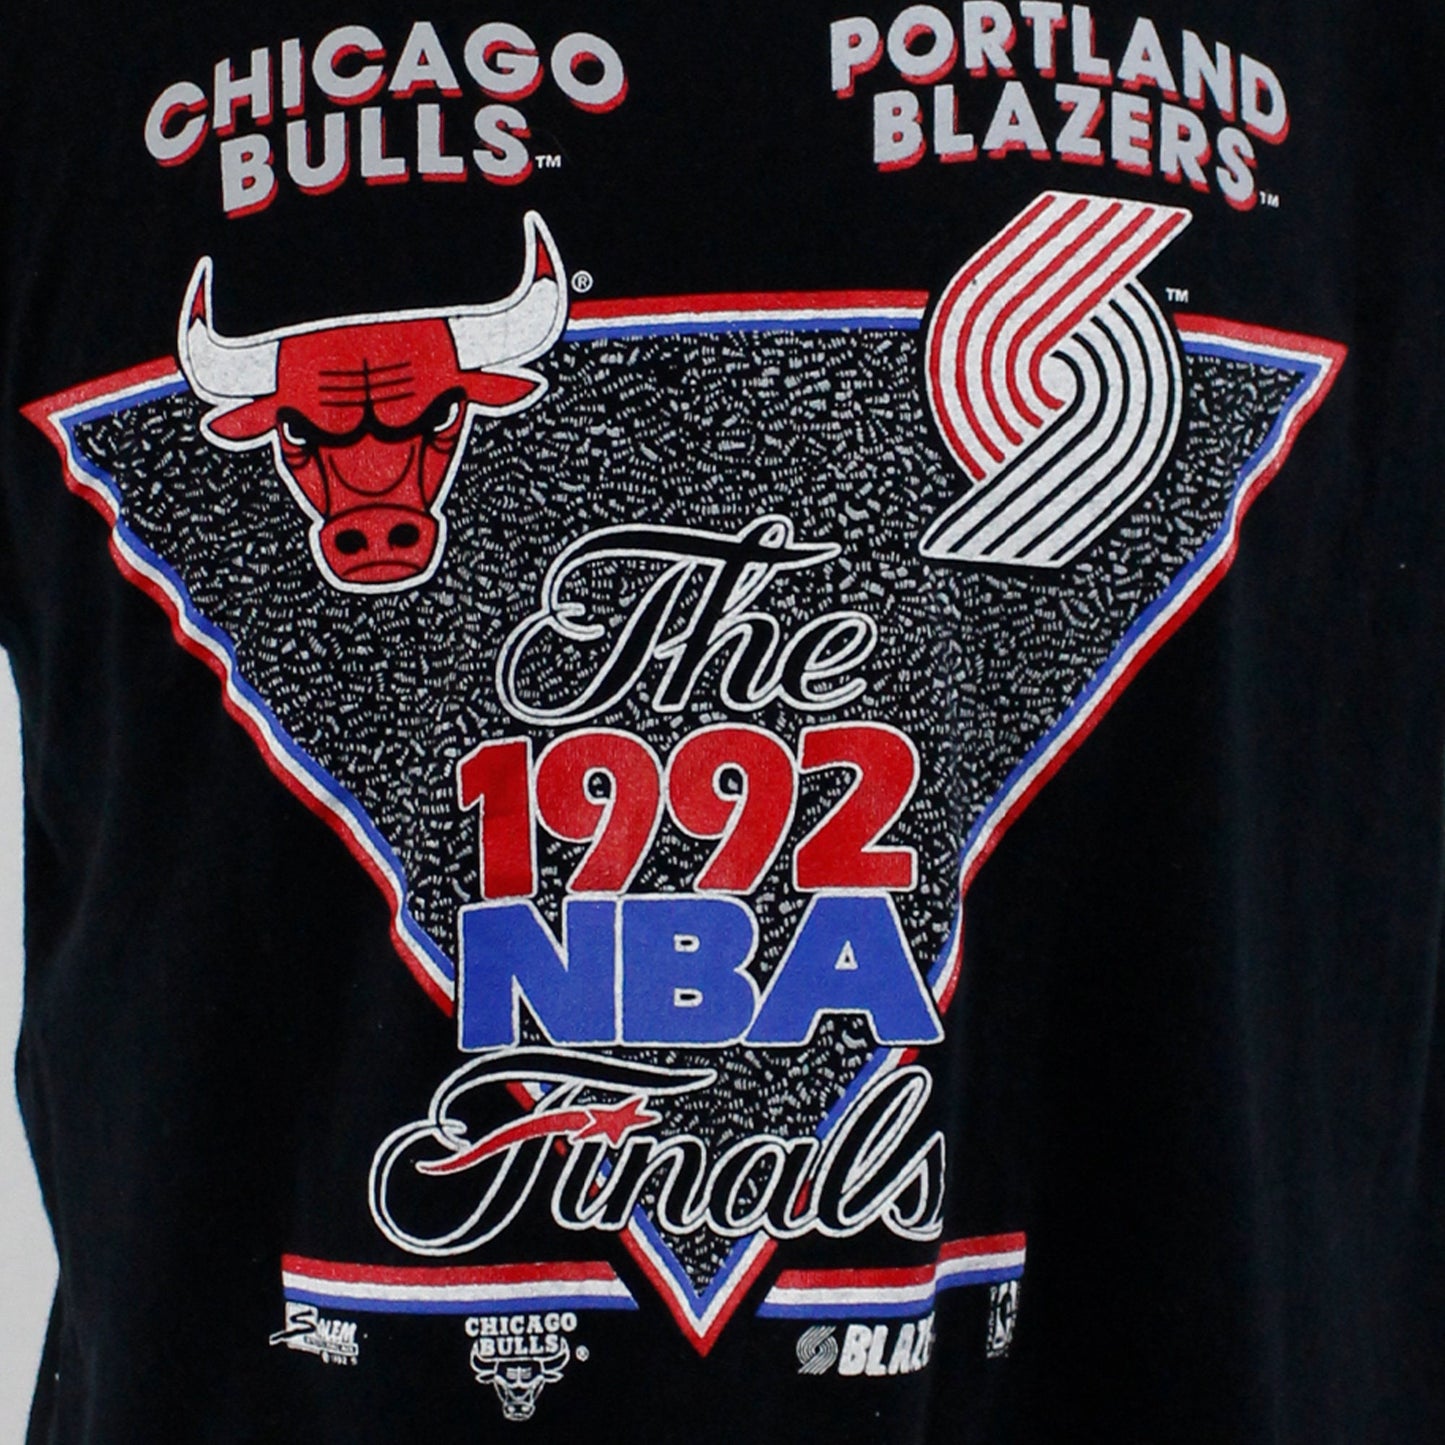 Vintage 1992 Bulls vs Blazers NBA Finals Tee